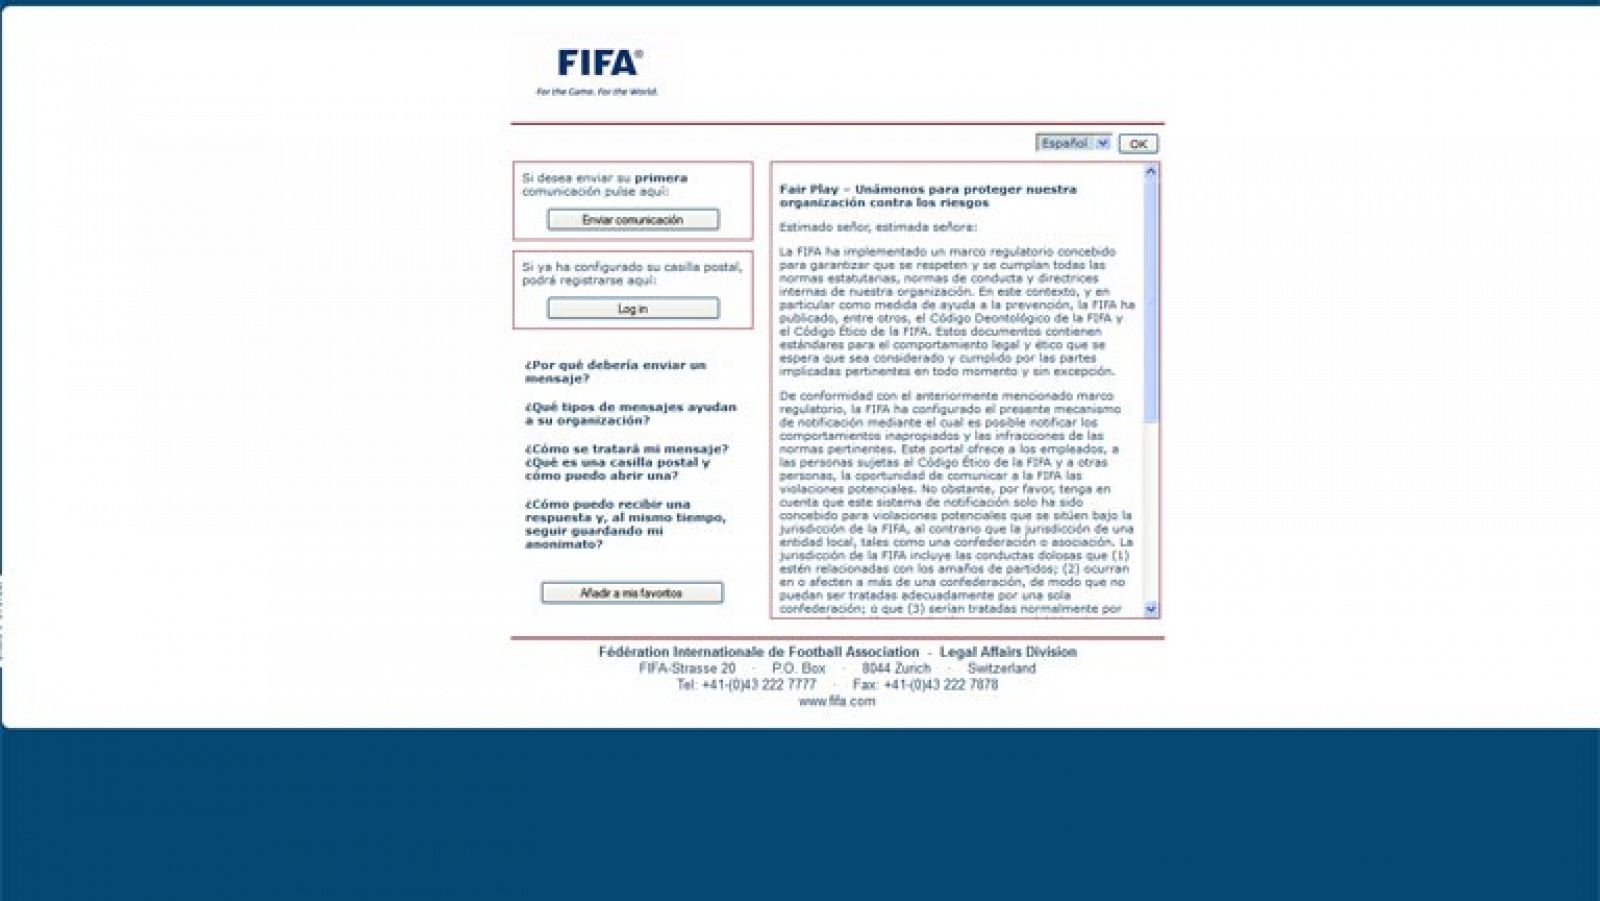 Imagen de la web de denuncias de amaños de la FIFA